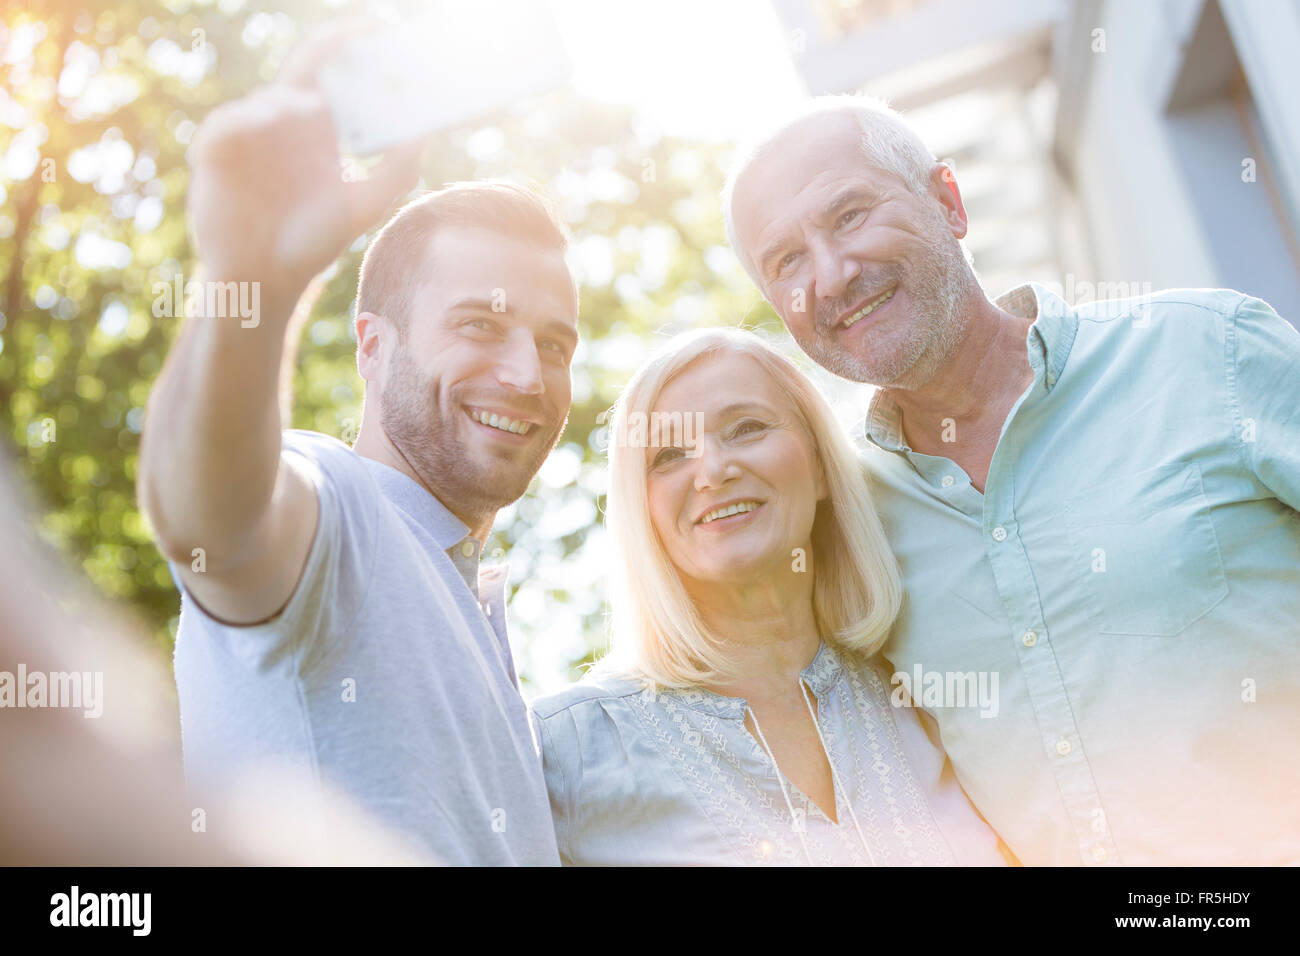 Lächelnd, älteres Paar und erwachsener Sohn nehmen Selfie im freien Stockfoto